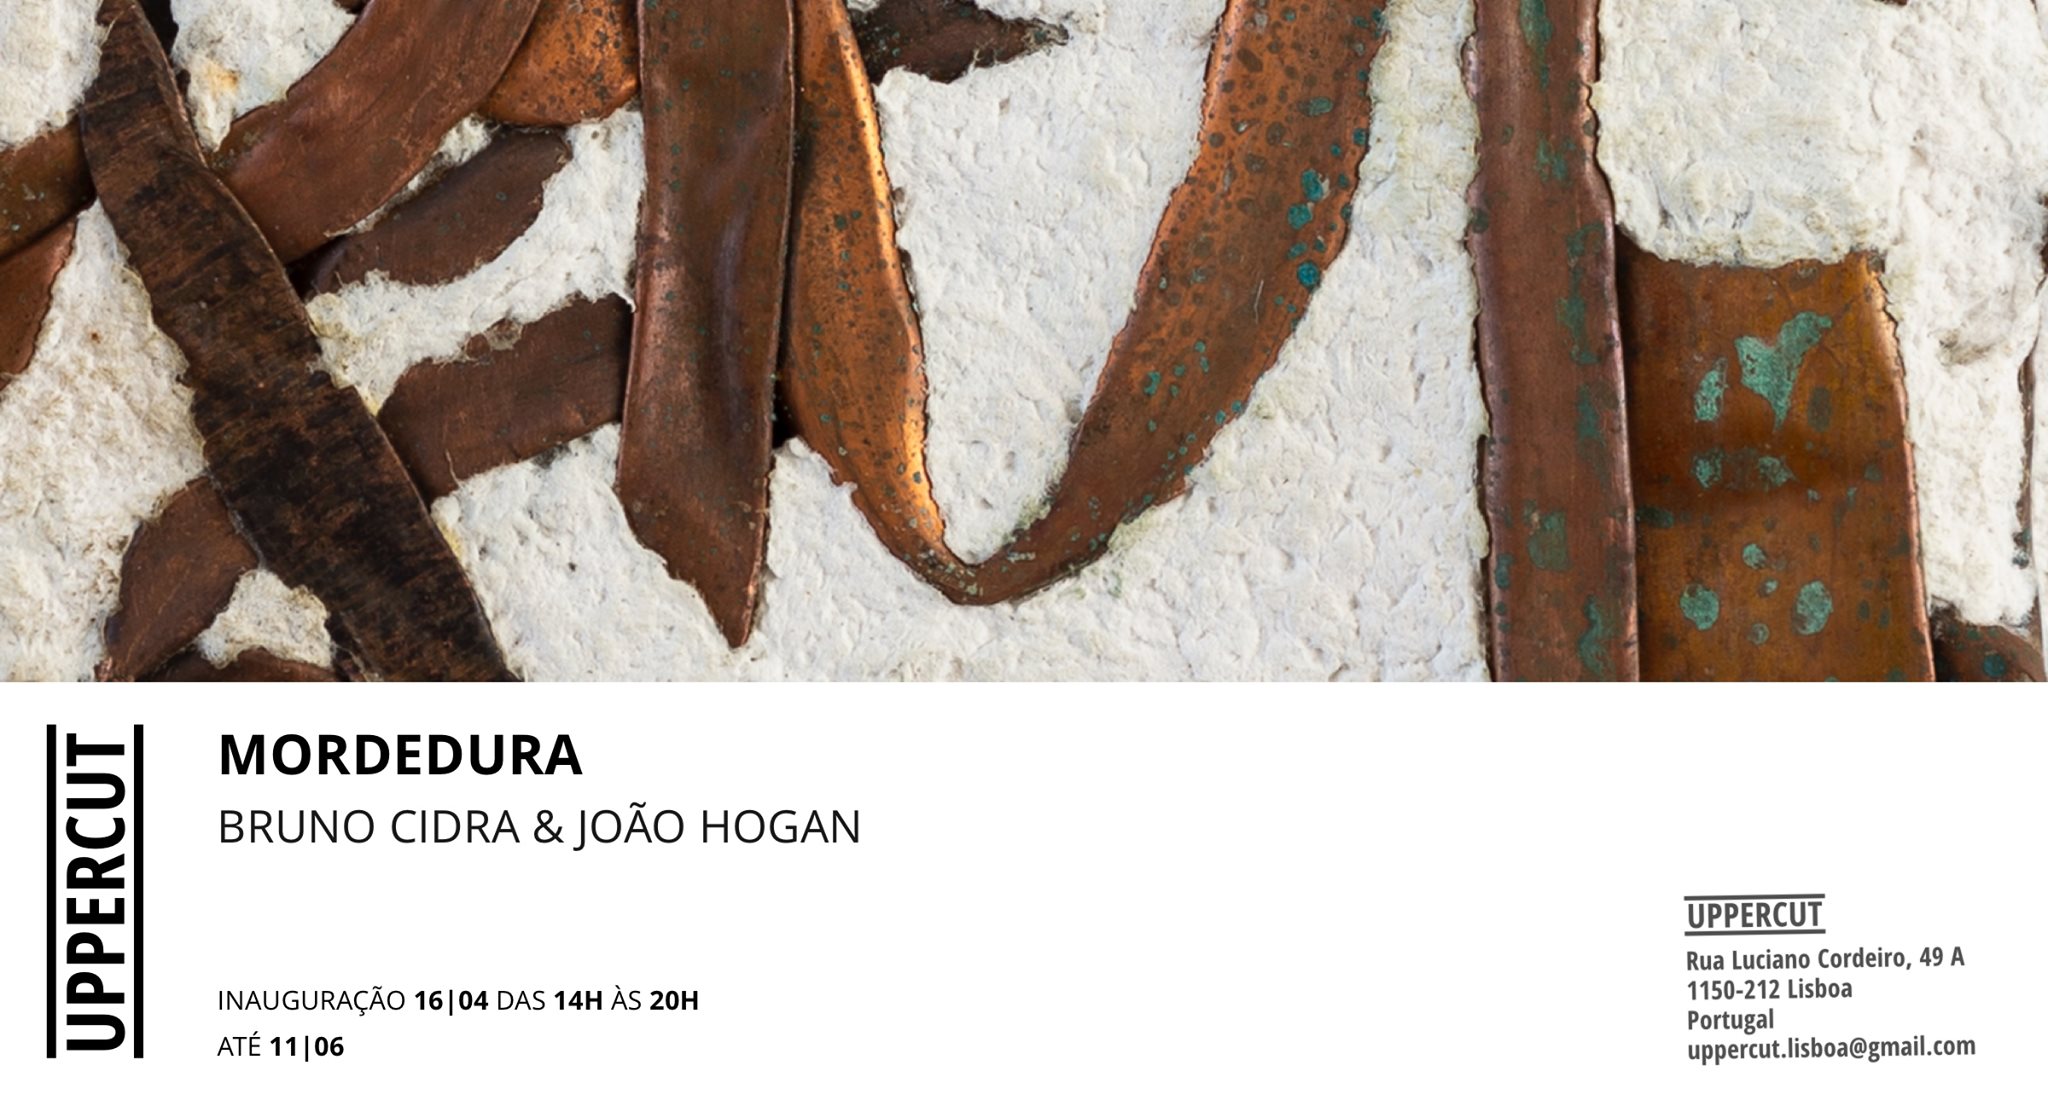 Opening: Bruno Cidra & João Hogan